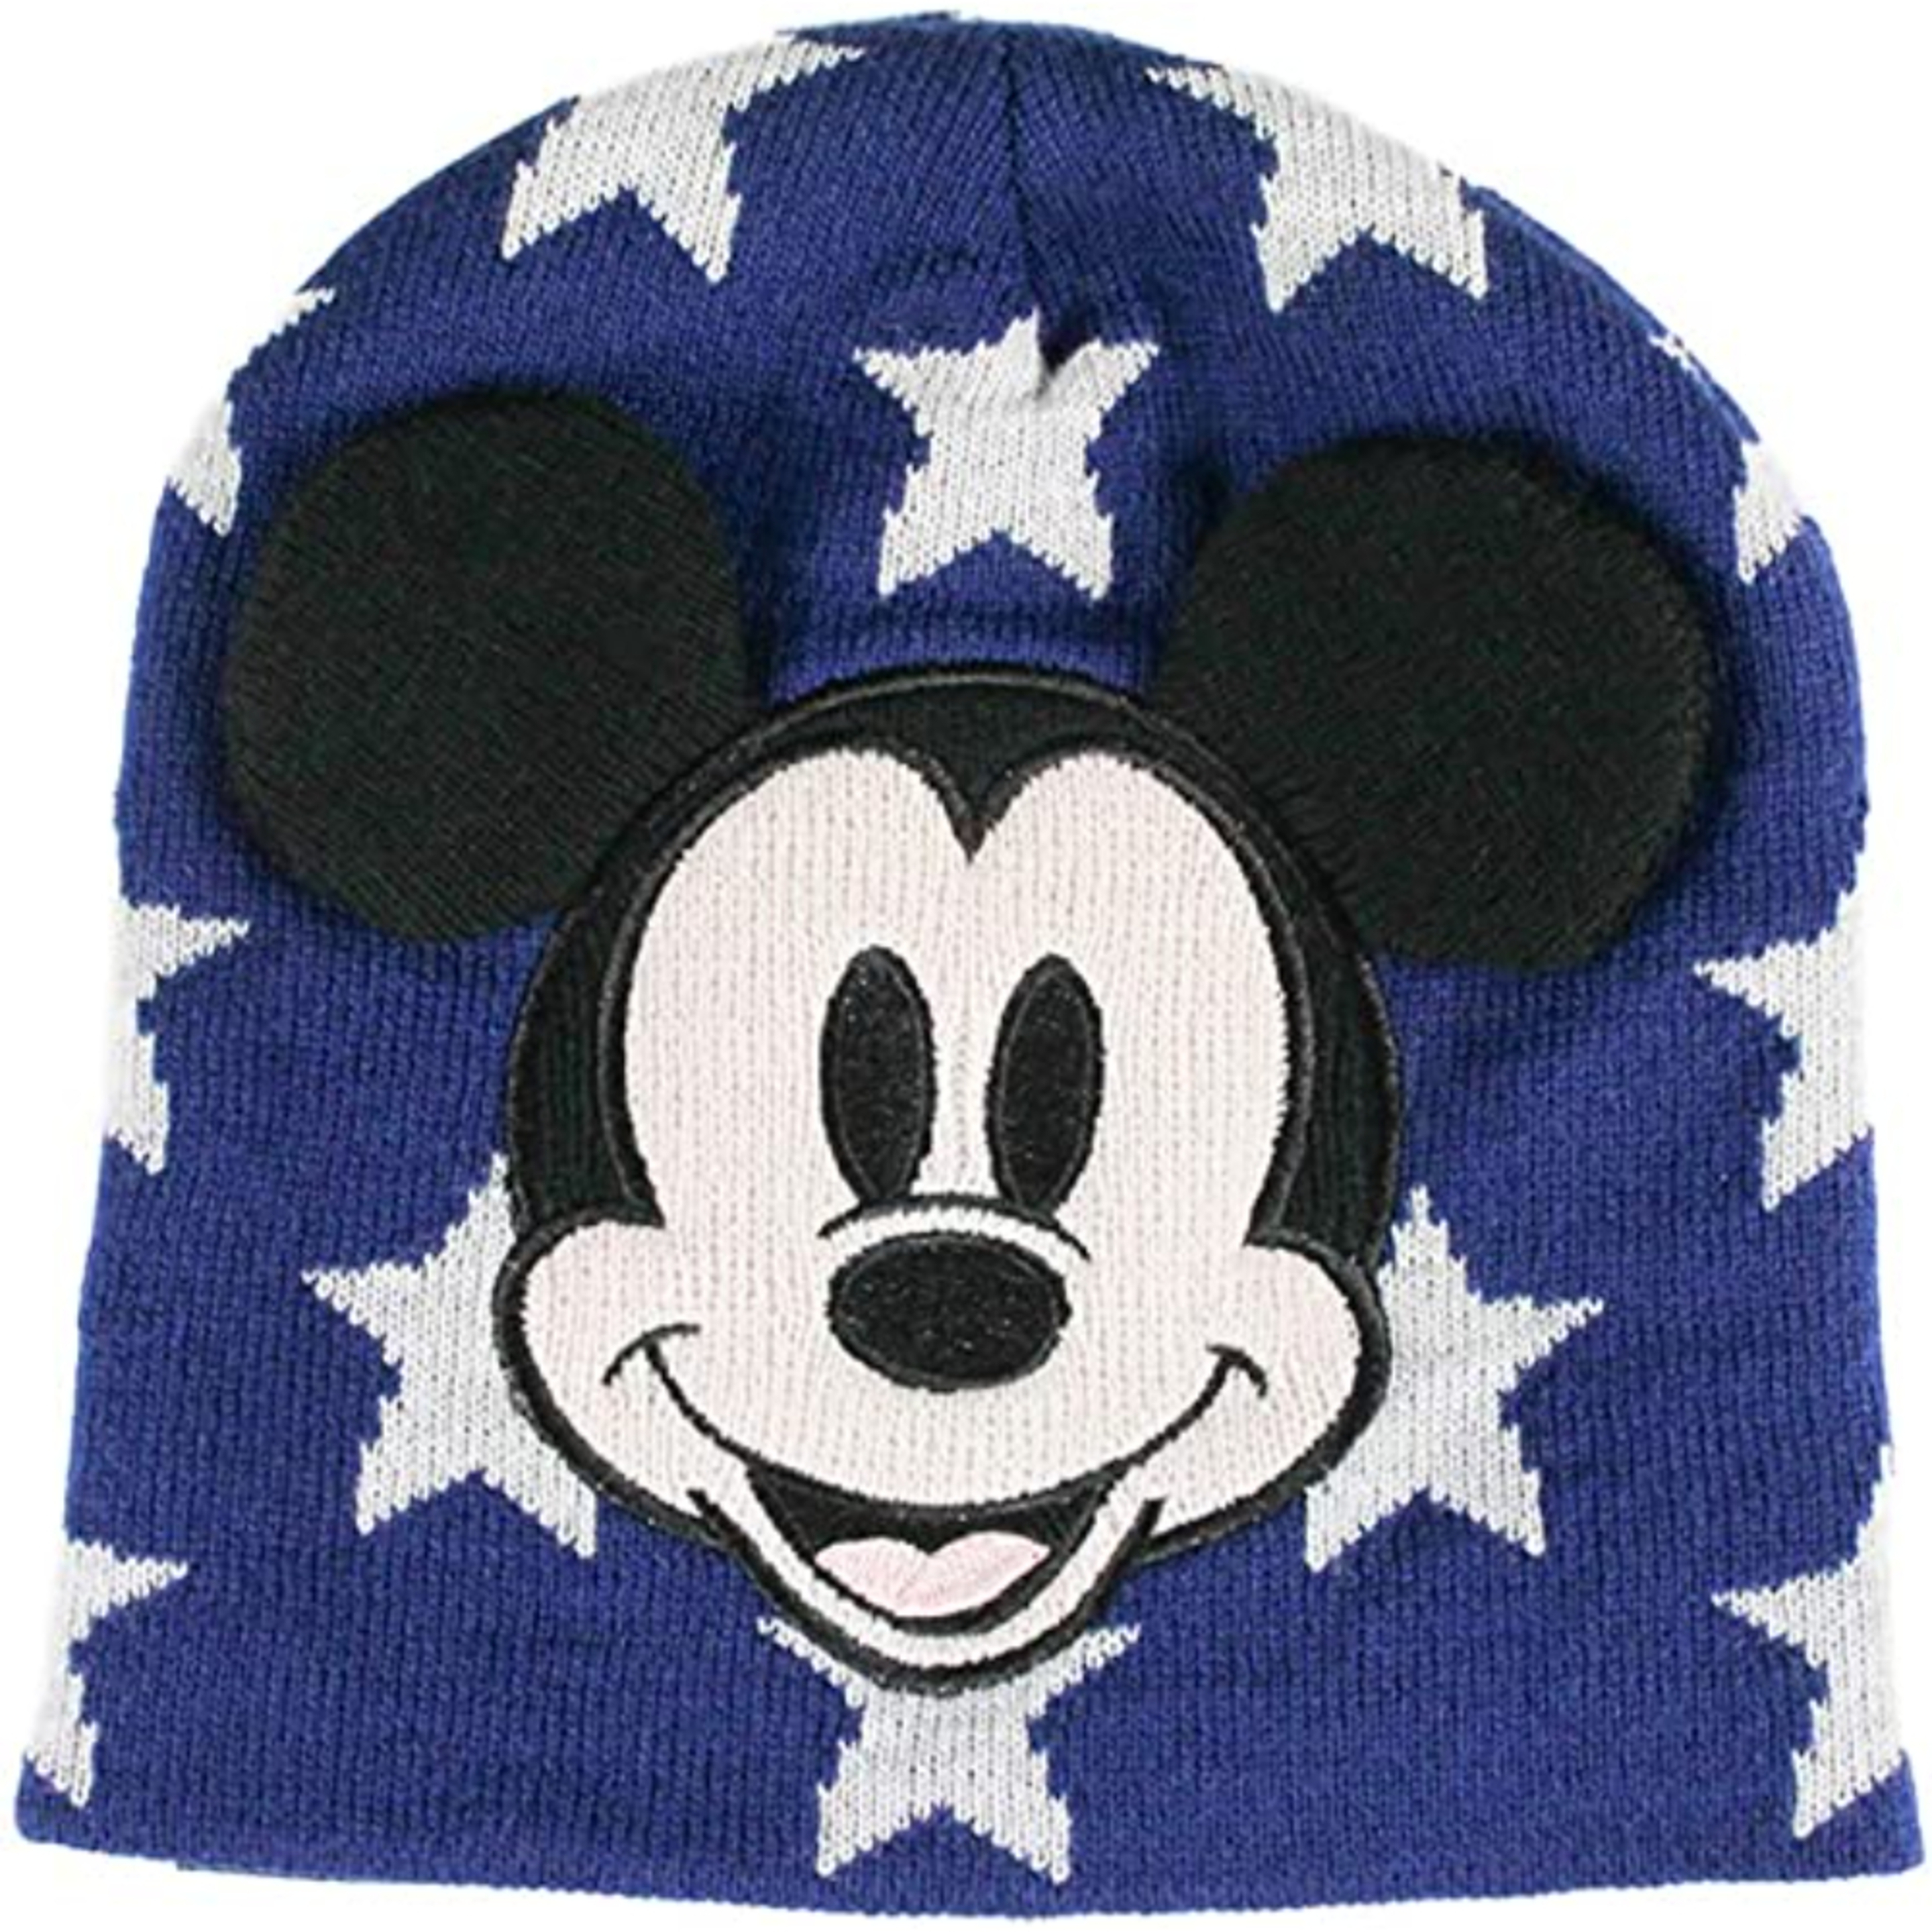 Gorro Mickey Mouse 72541 - azul - 